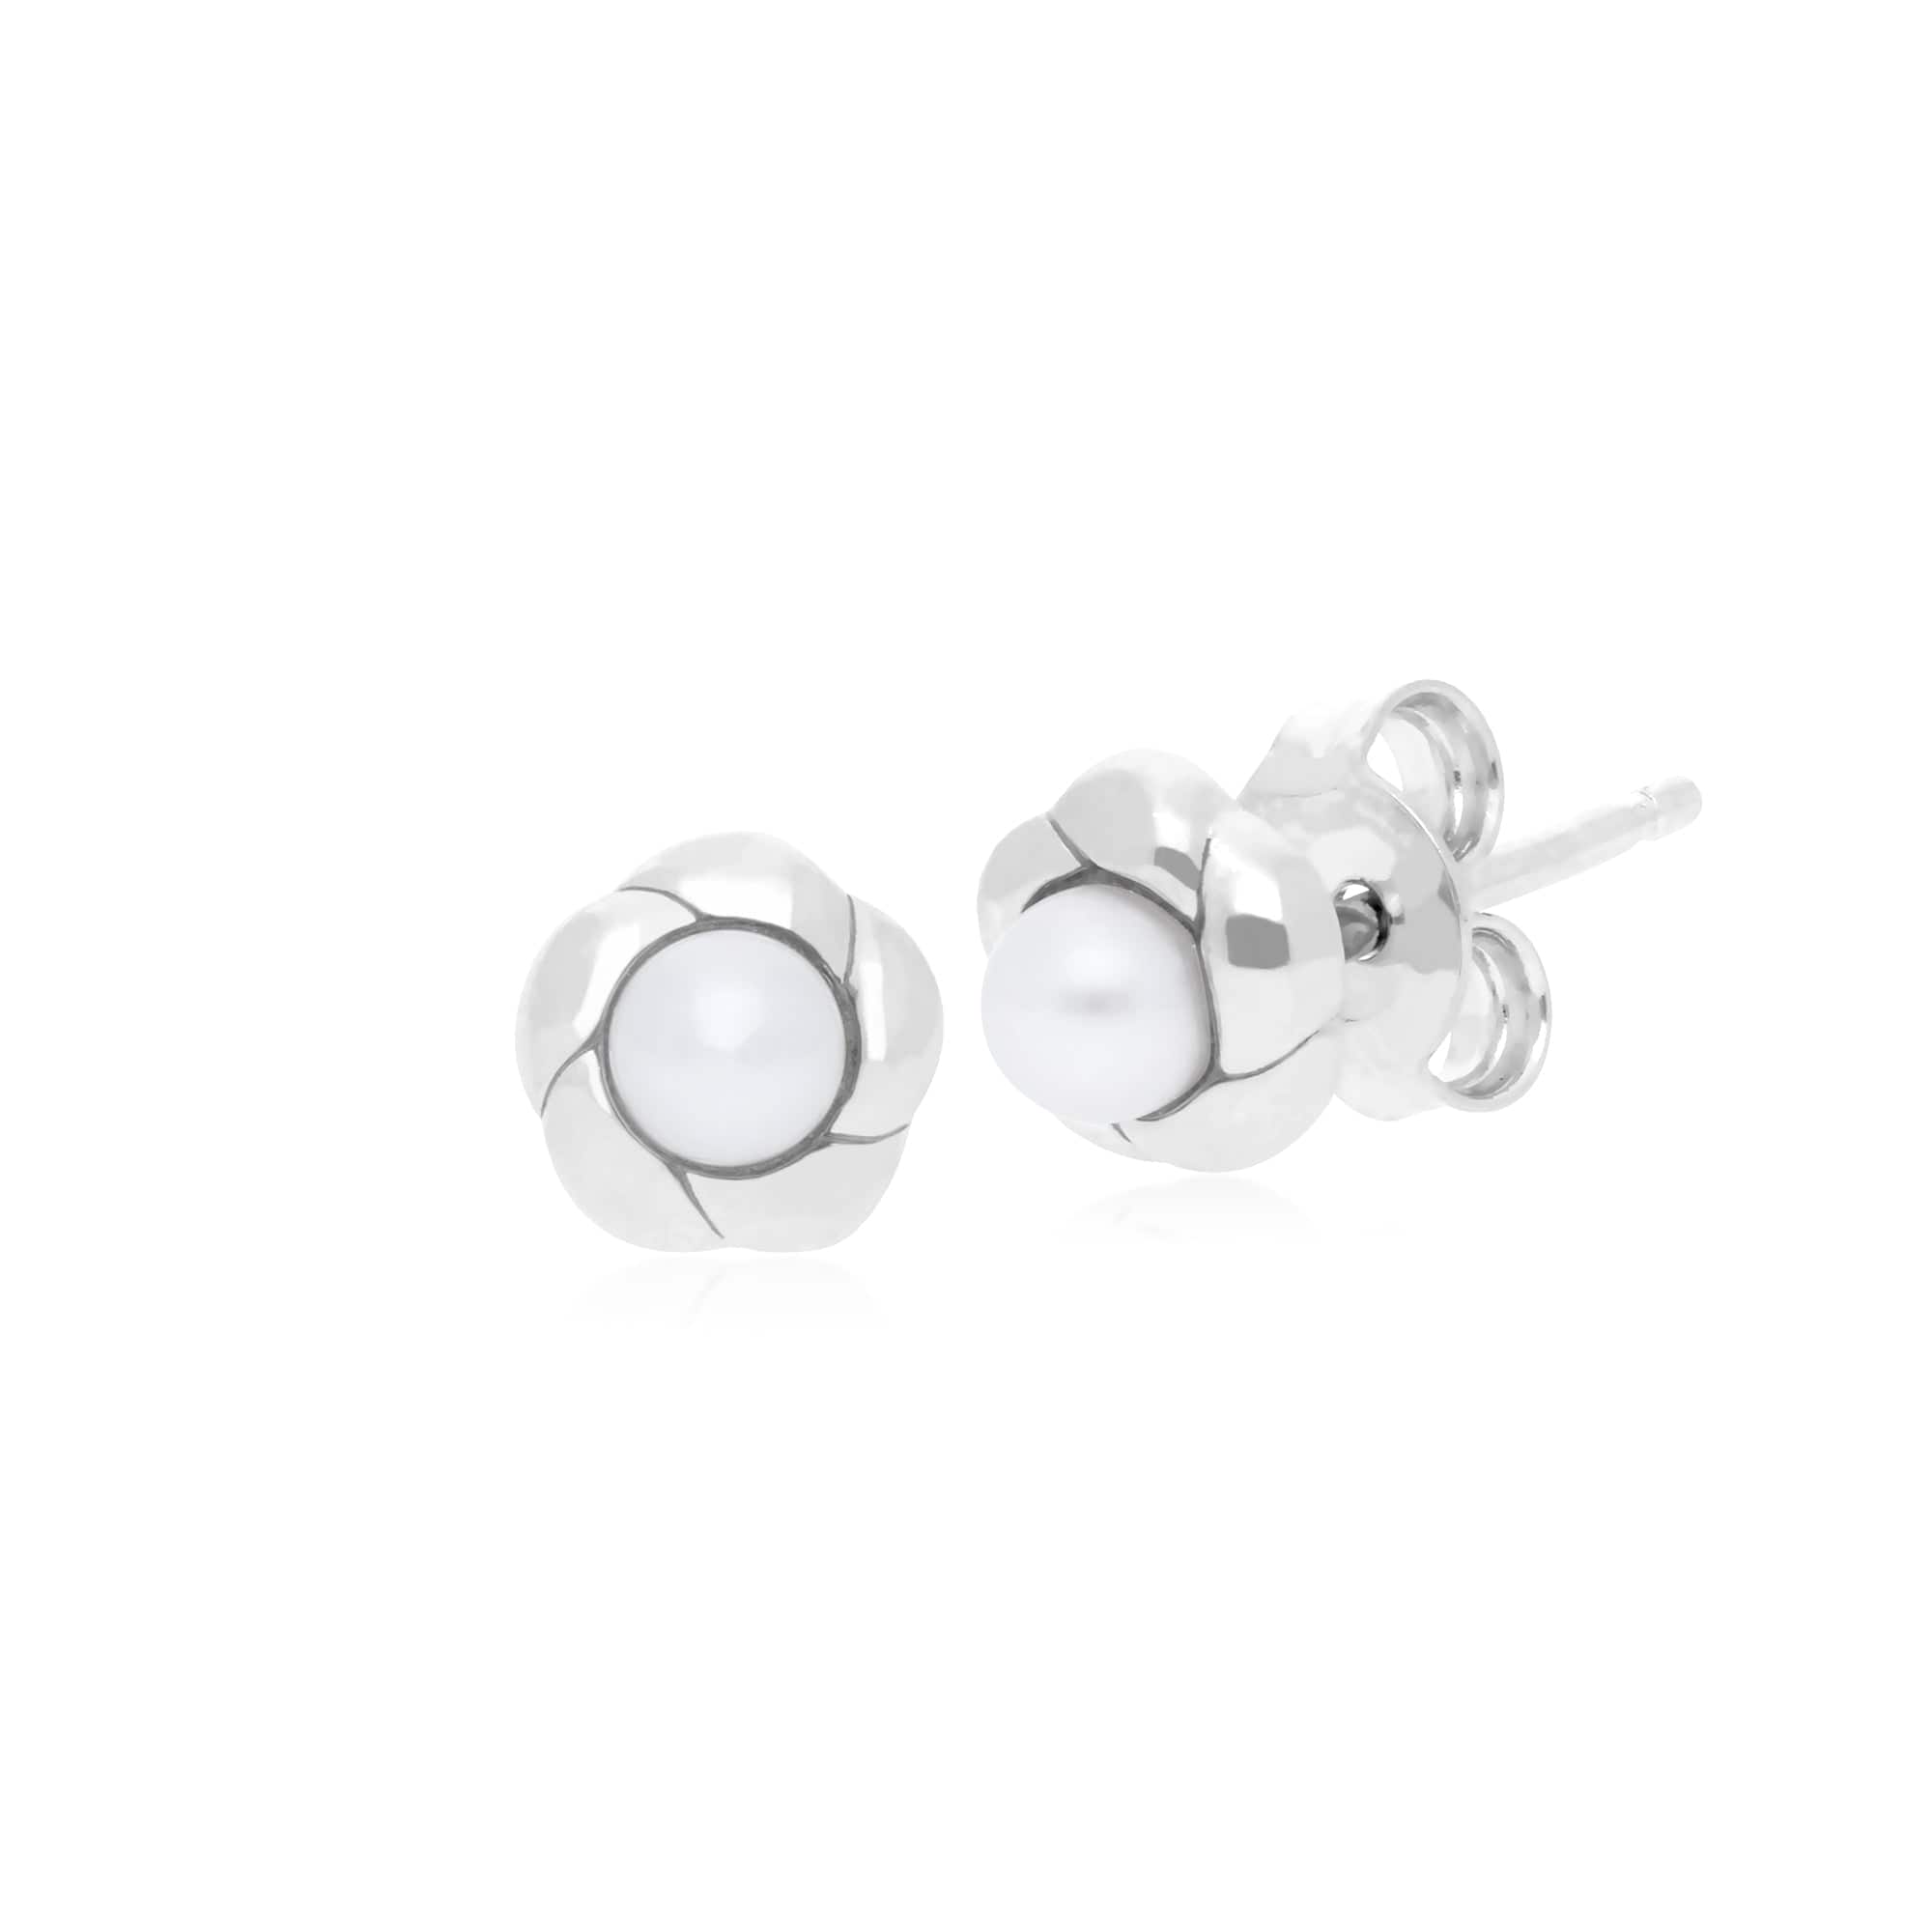 Gemondo Floral Sterling Silver Pearl 6mm Stud Earrings Image